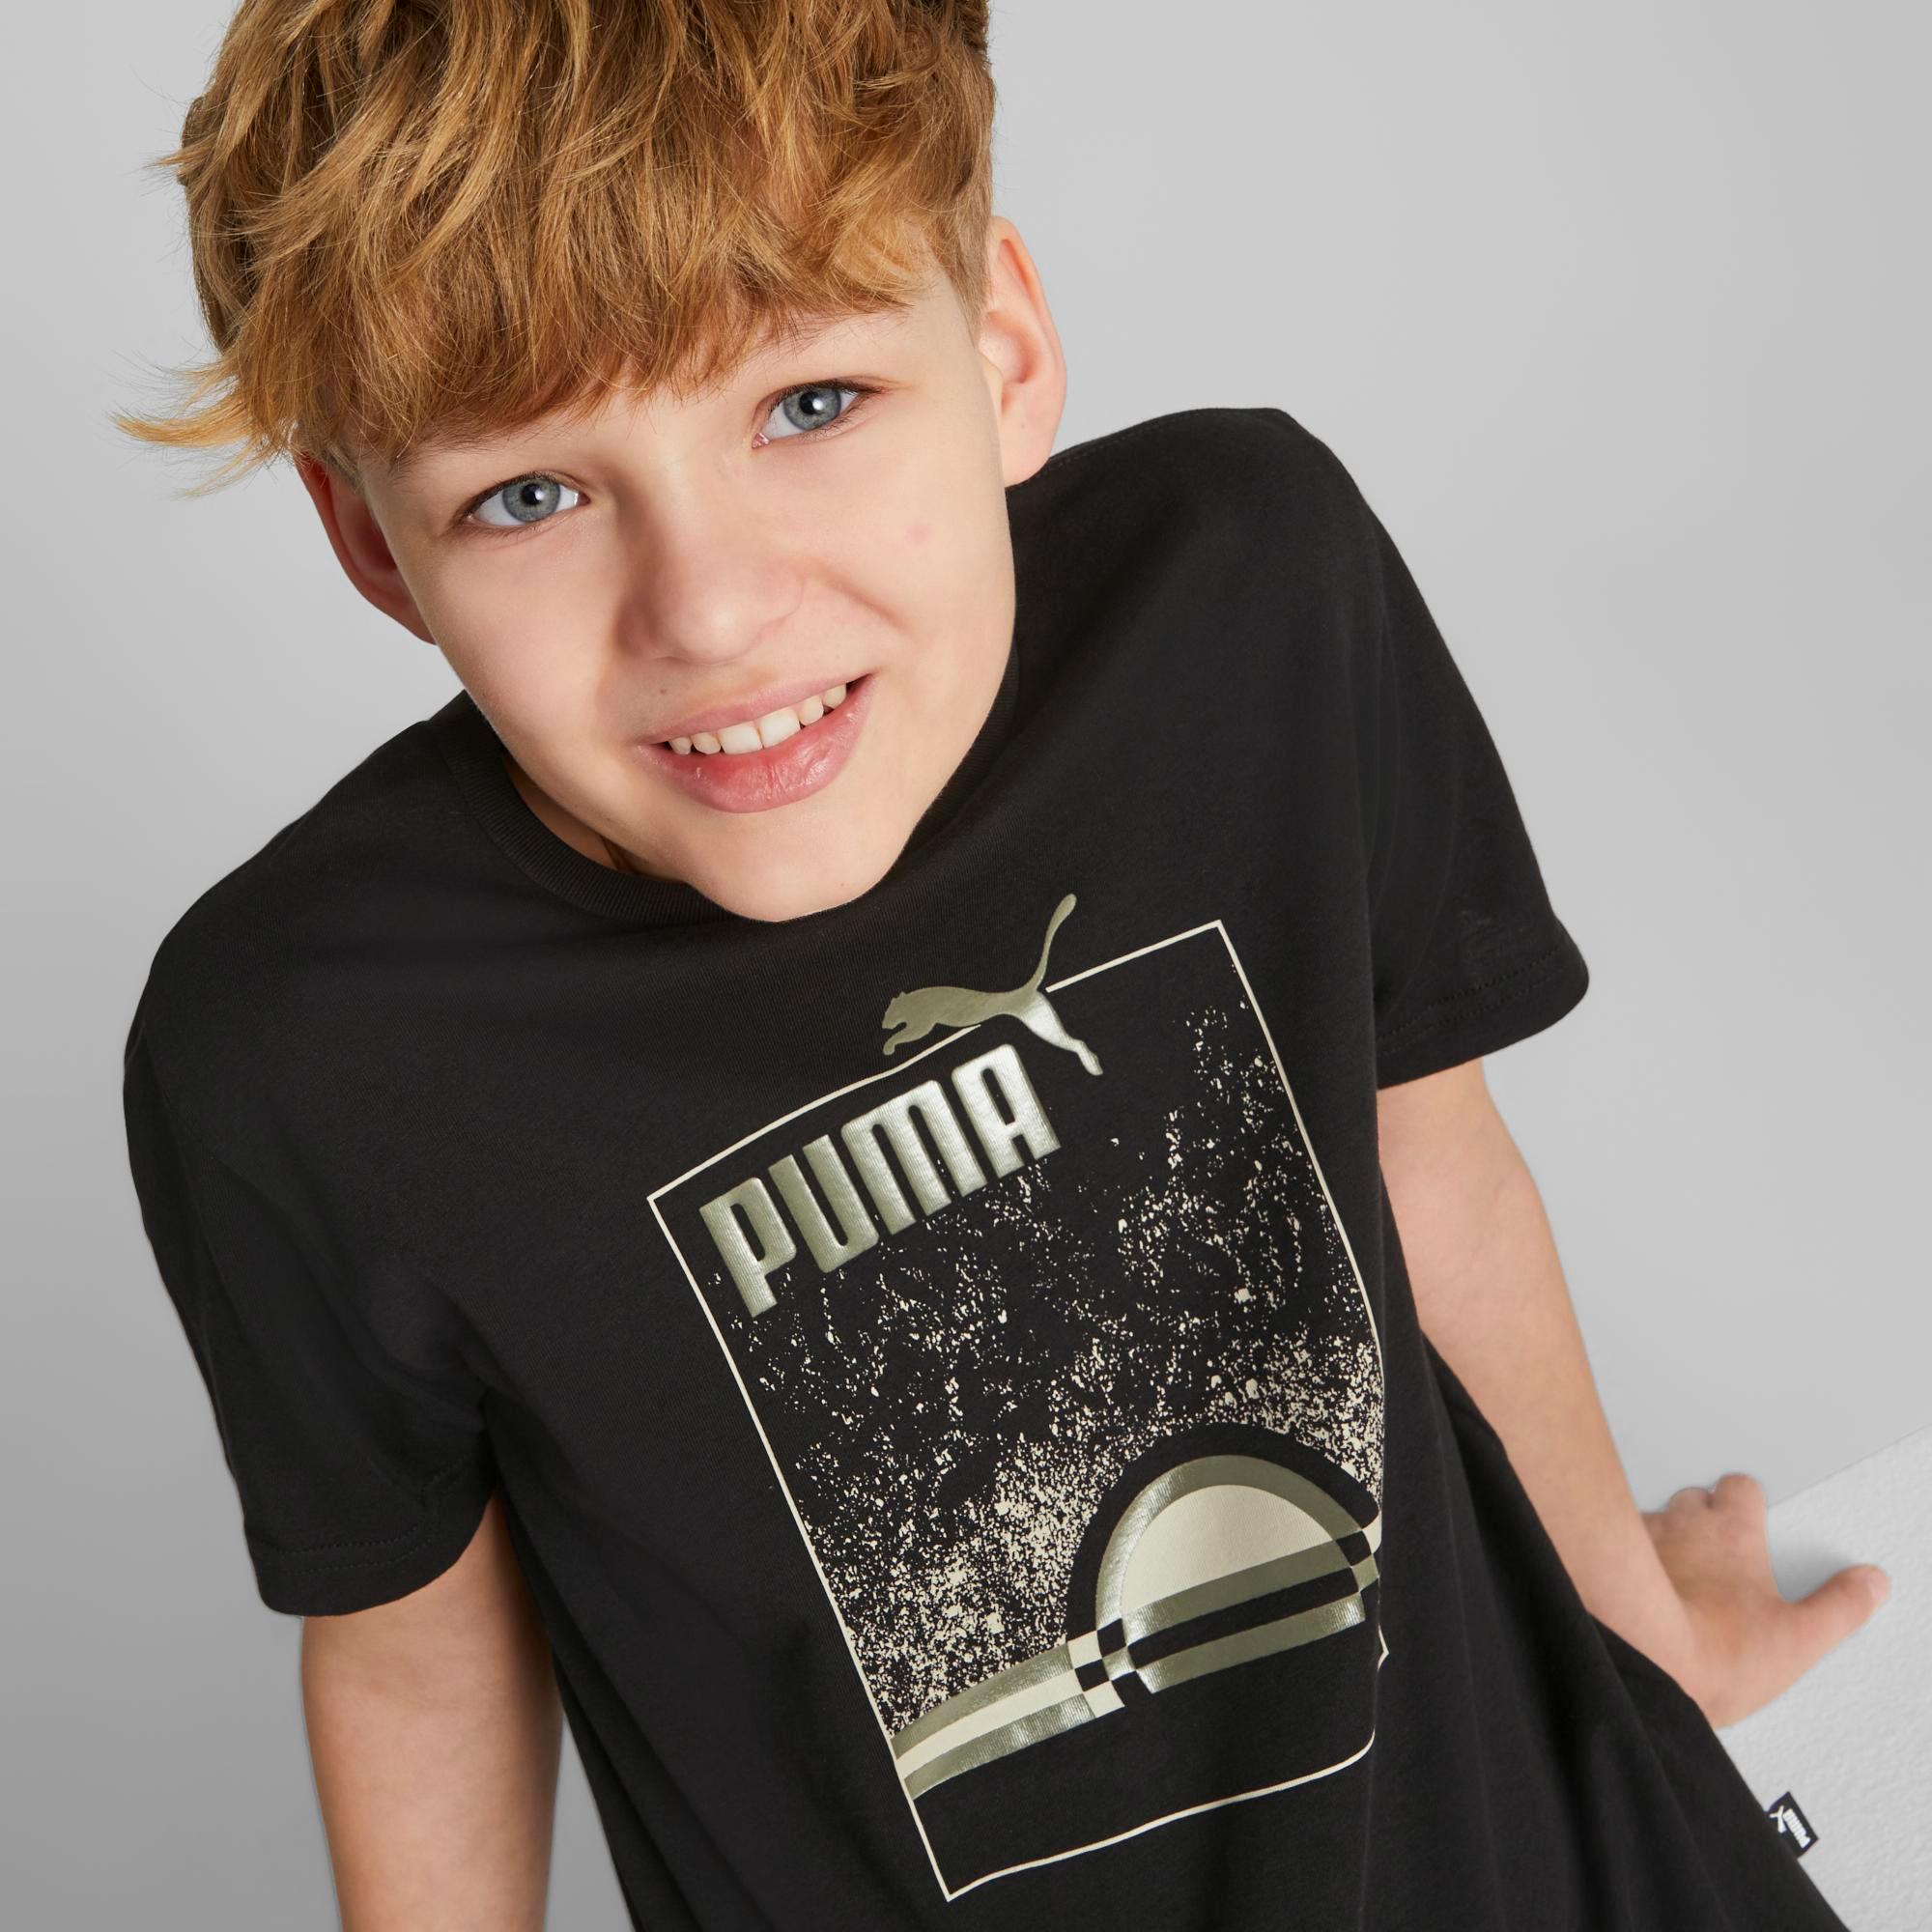 PUMA ESSENTIAL STREET Jungen kaufen black Shop Online ART SportScheck T-Shirt von Summer im puma